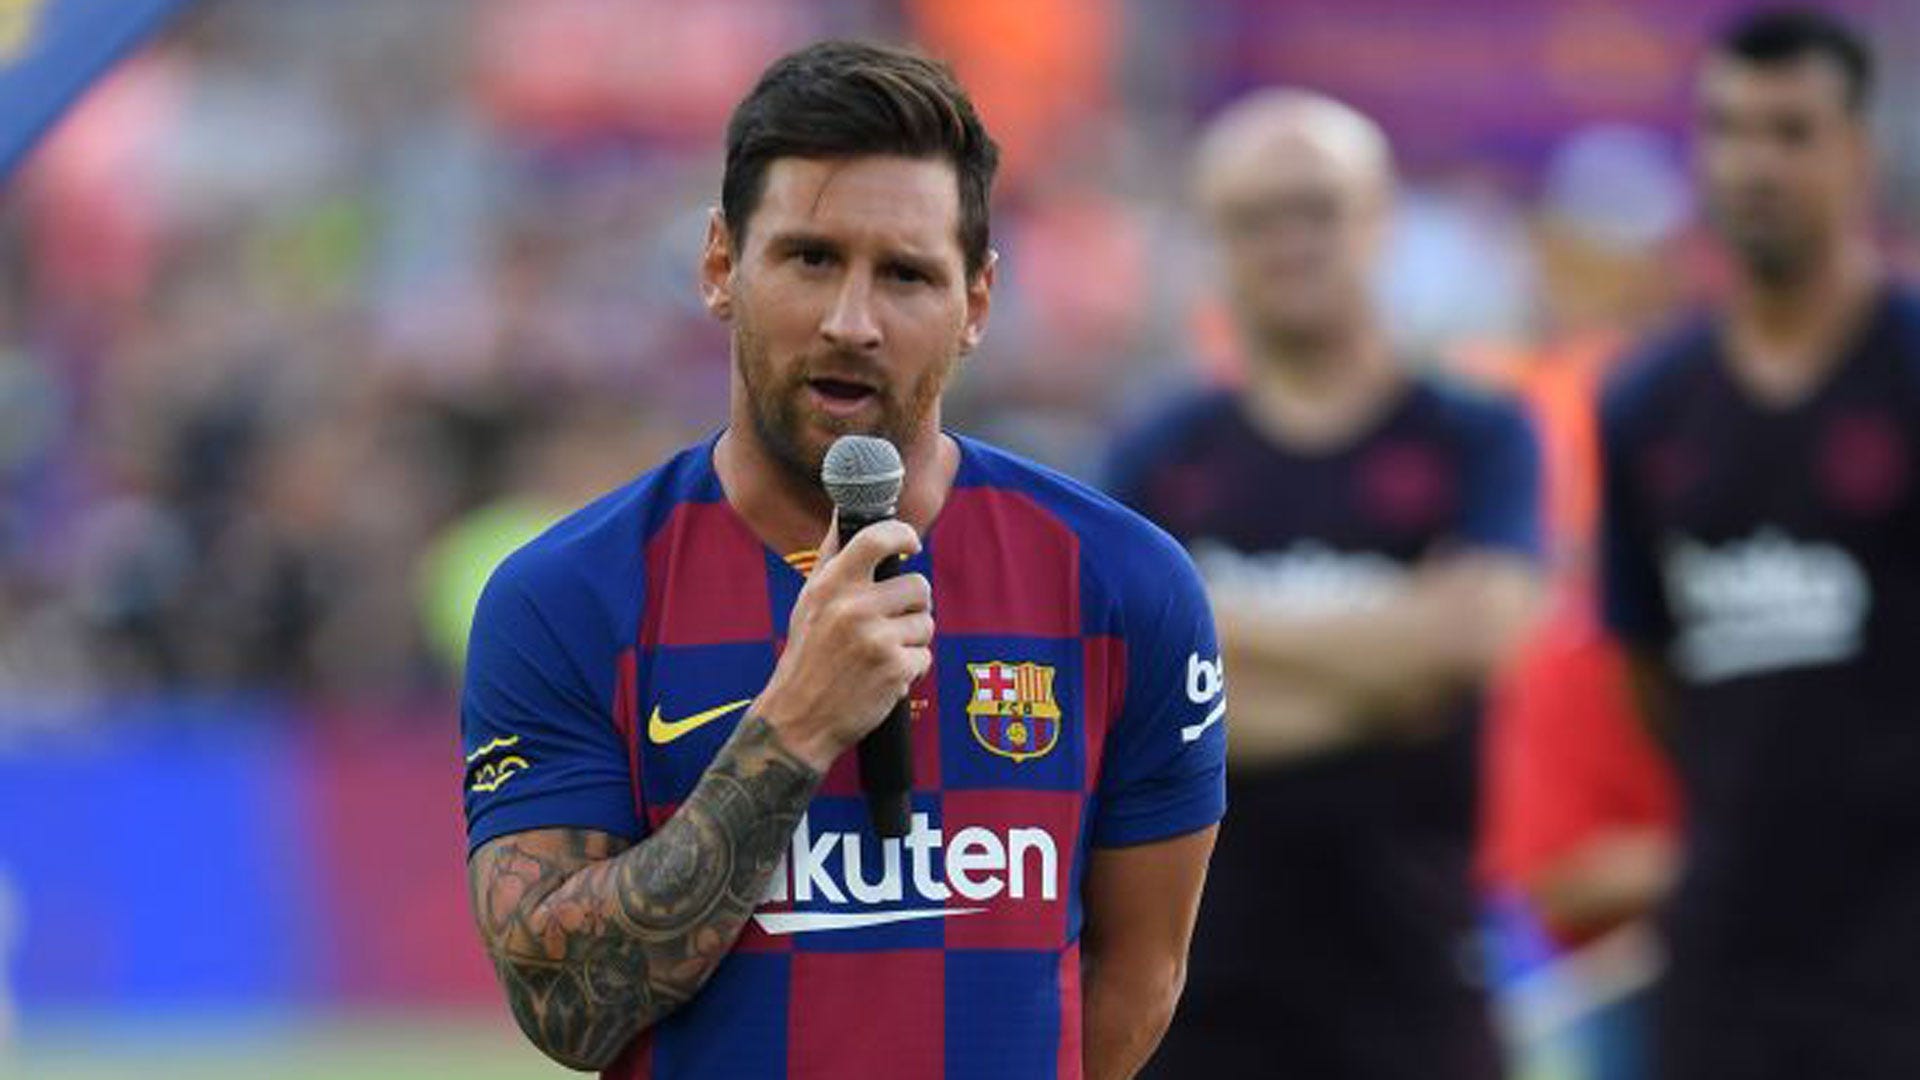 Danh hiệu của Messi không thể đong đếm hết. Hàng loạt giải thưởng từ Cầu thủ xuất sắc nhất thế giới đến Quả bóng Vàng cùng những danh hiệu của Barcelona. Hãy xem hình ảnh để cảm nhận sự đỉnh cao của Messi trong sự nghiệp